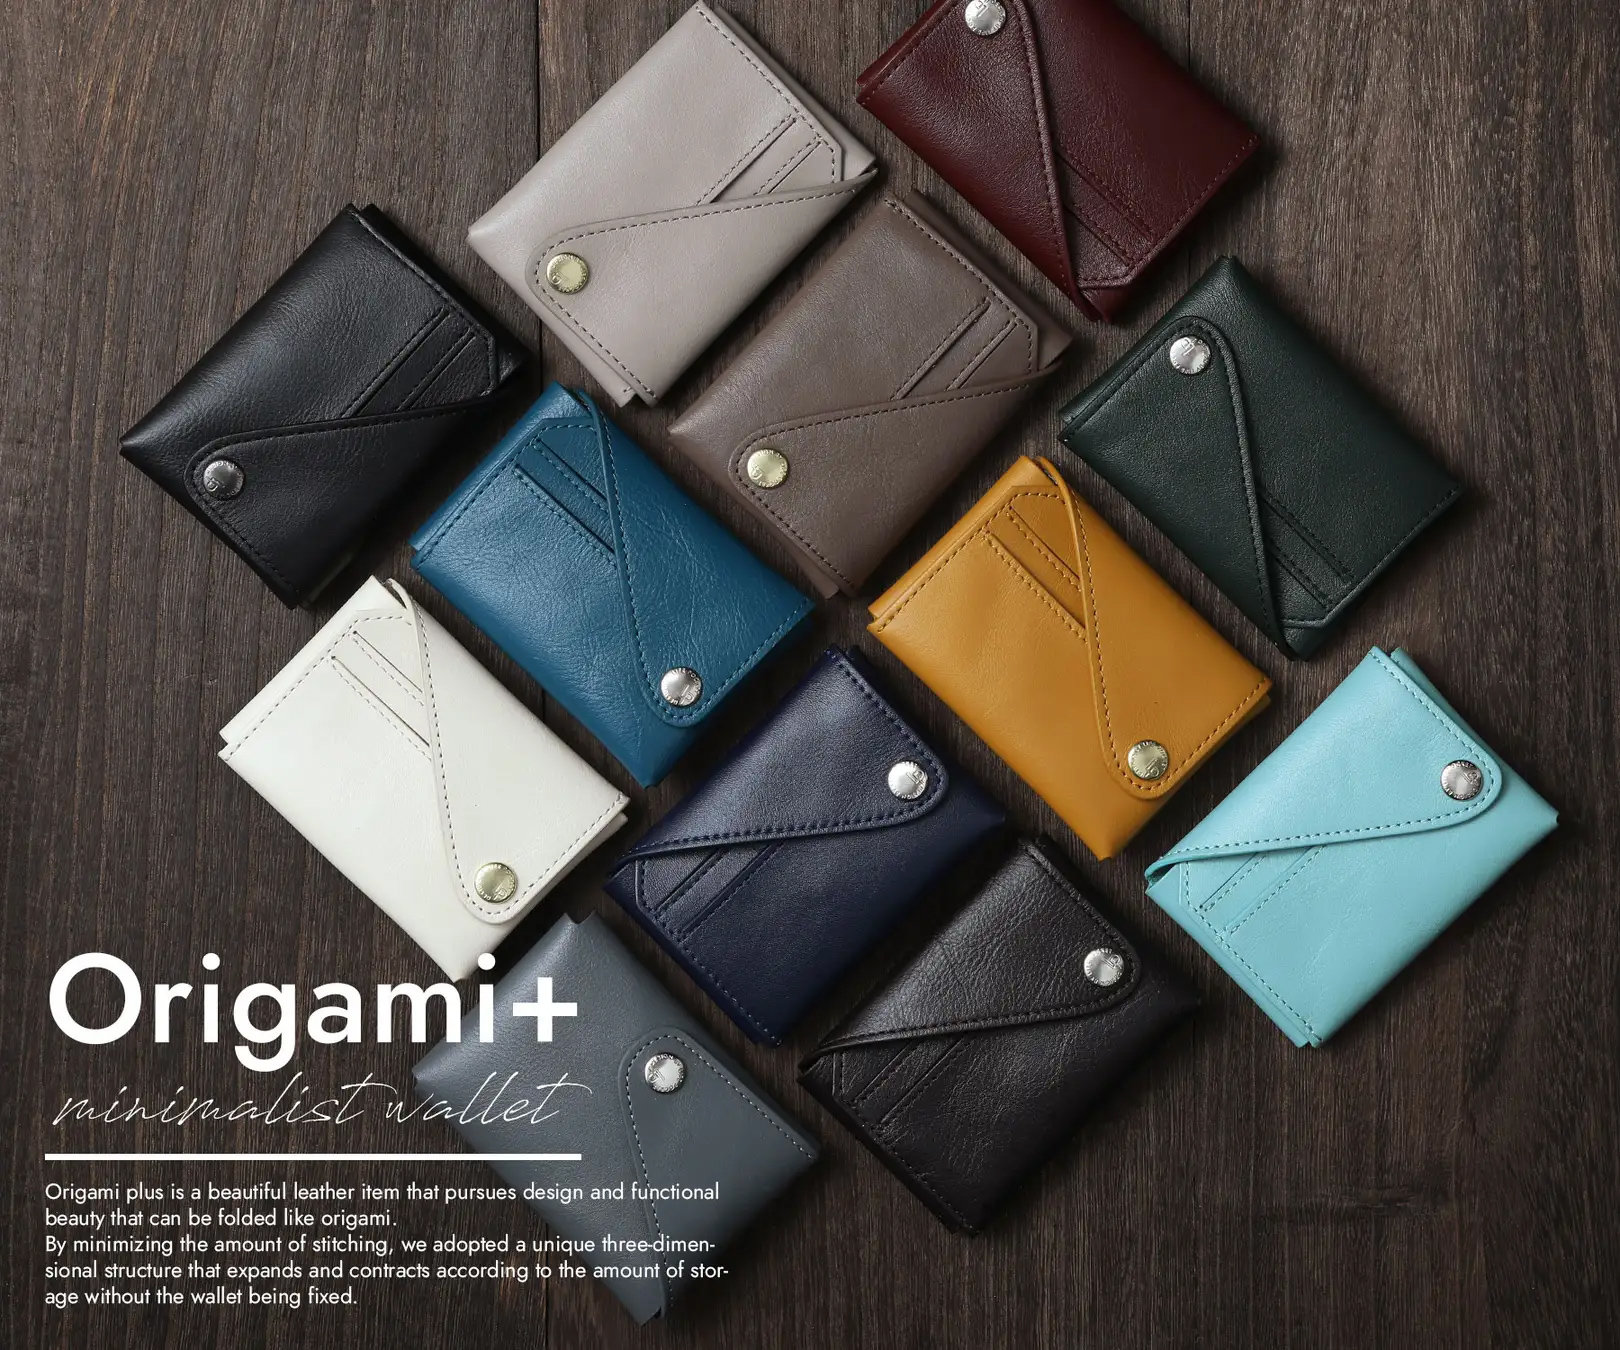 紛失防止タグ付き、折りたためるミニ財布「Origami+」 4950円で先行